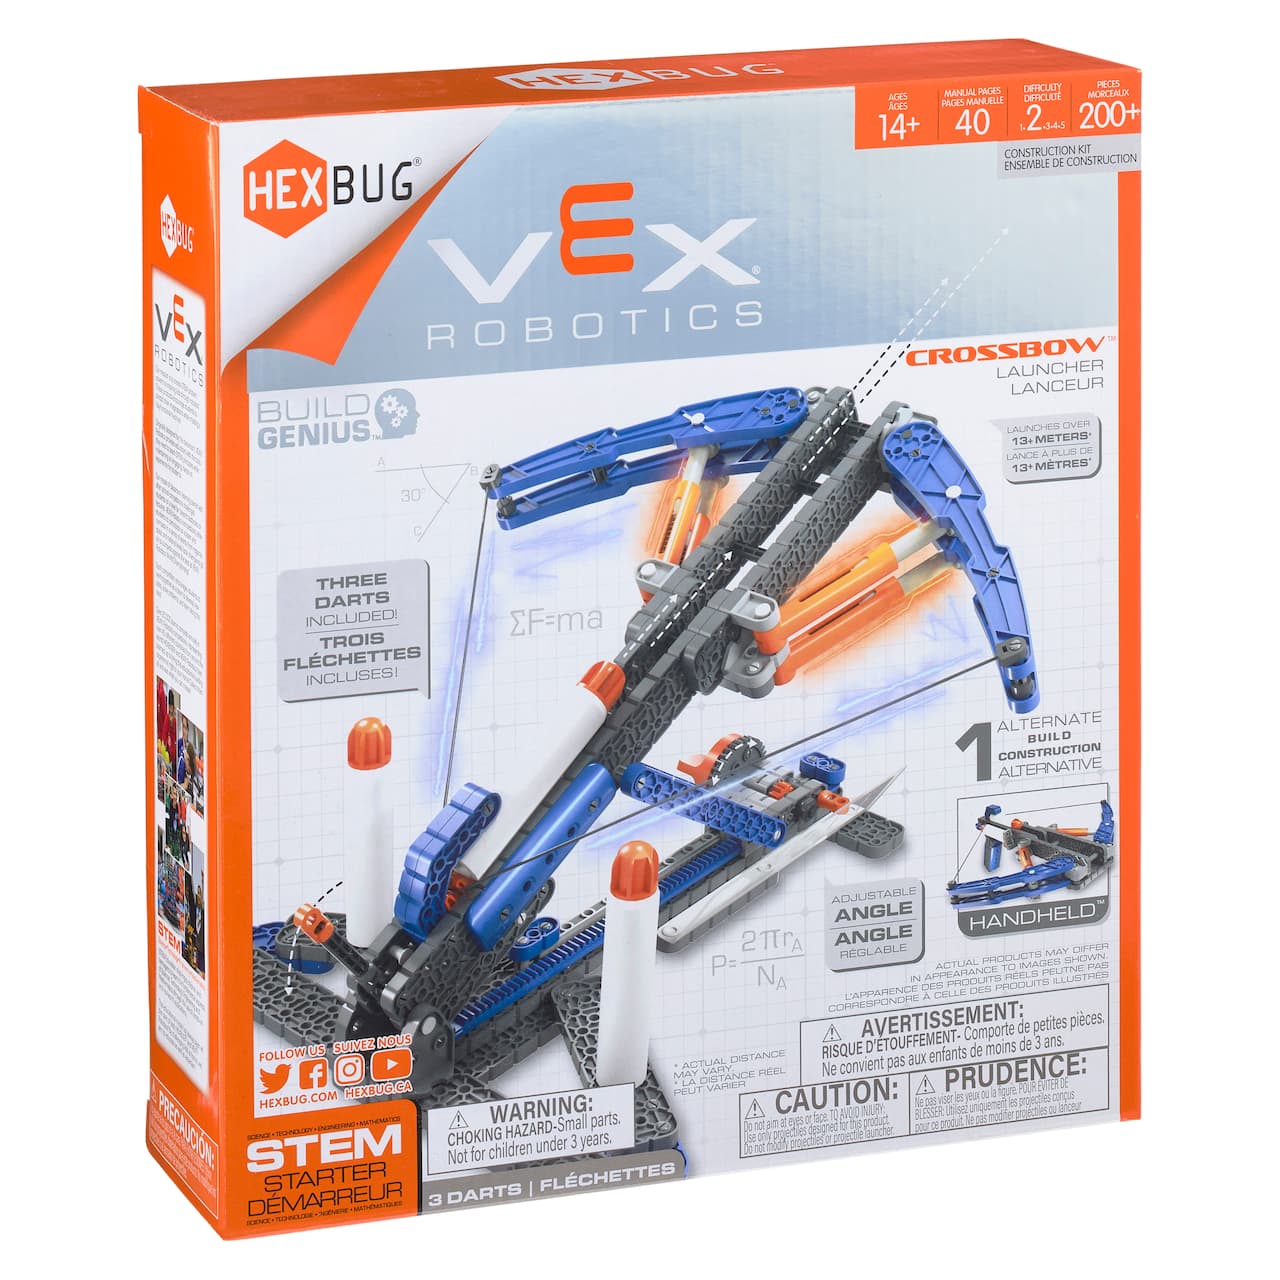 Hexbug&#xAE; Vex&#xAE; Robotics Crossbow&#x2122;